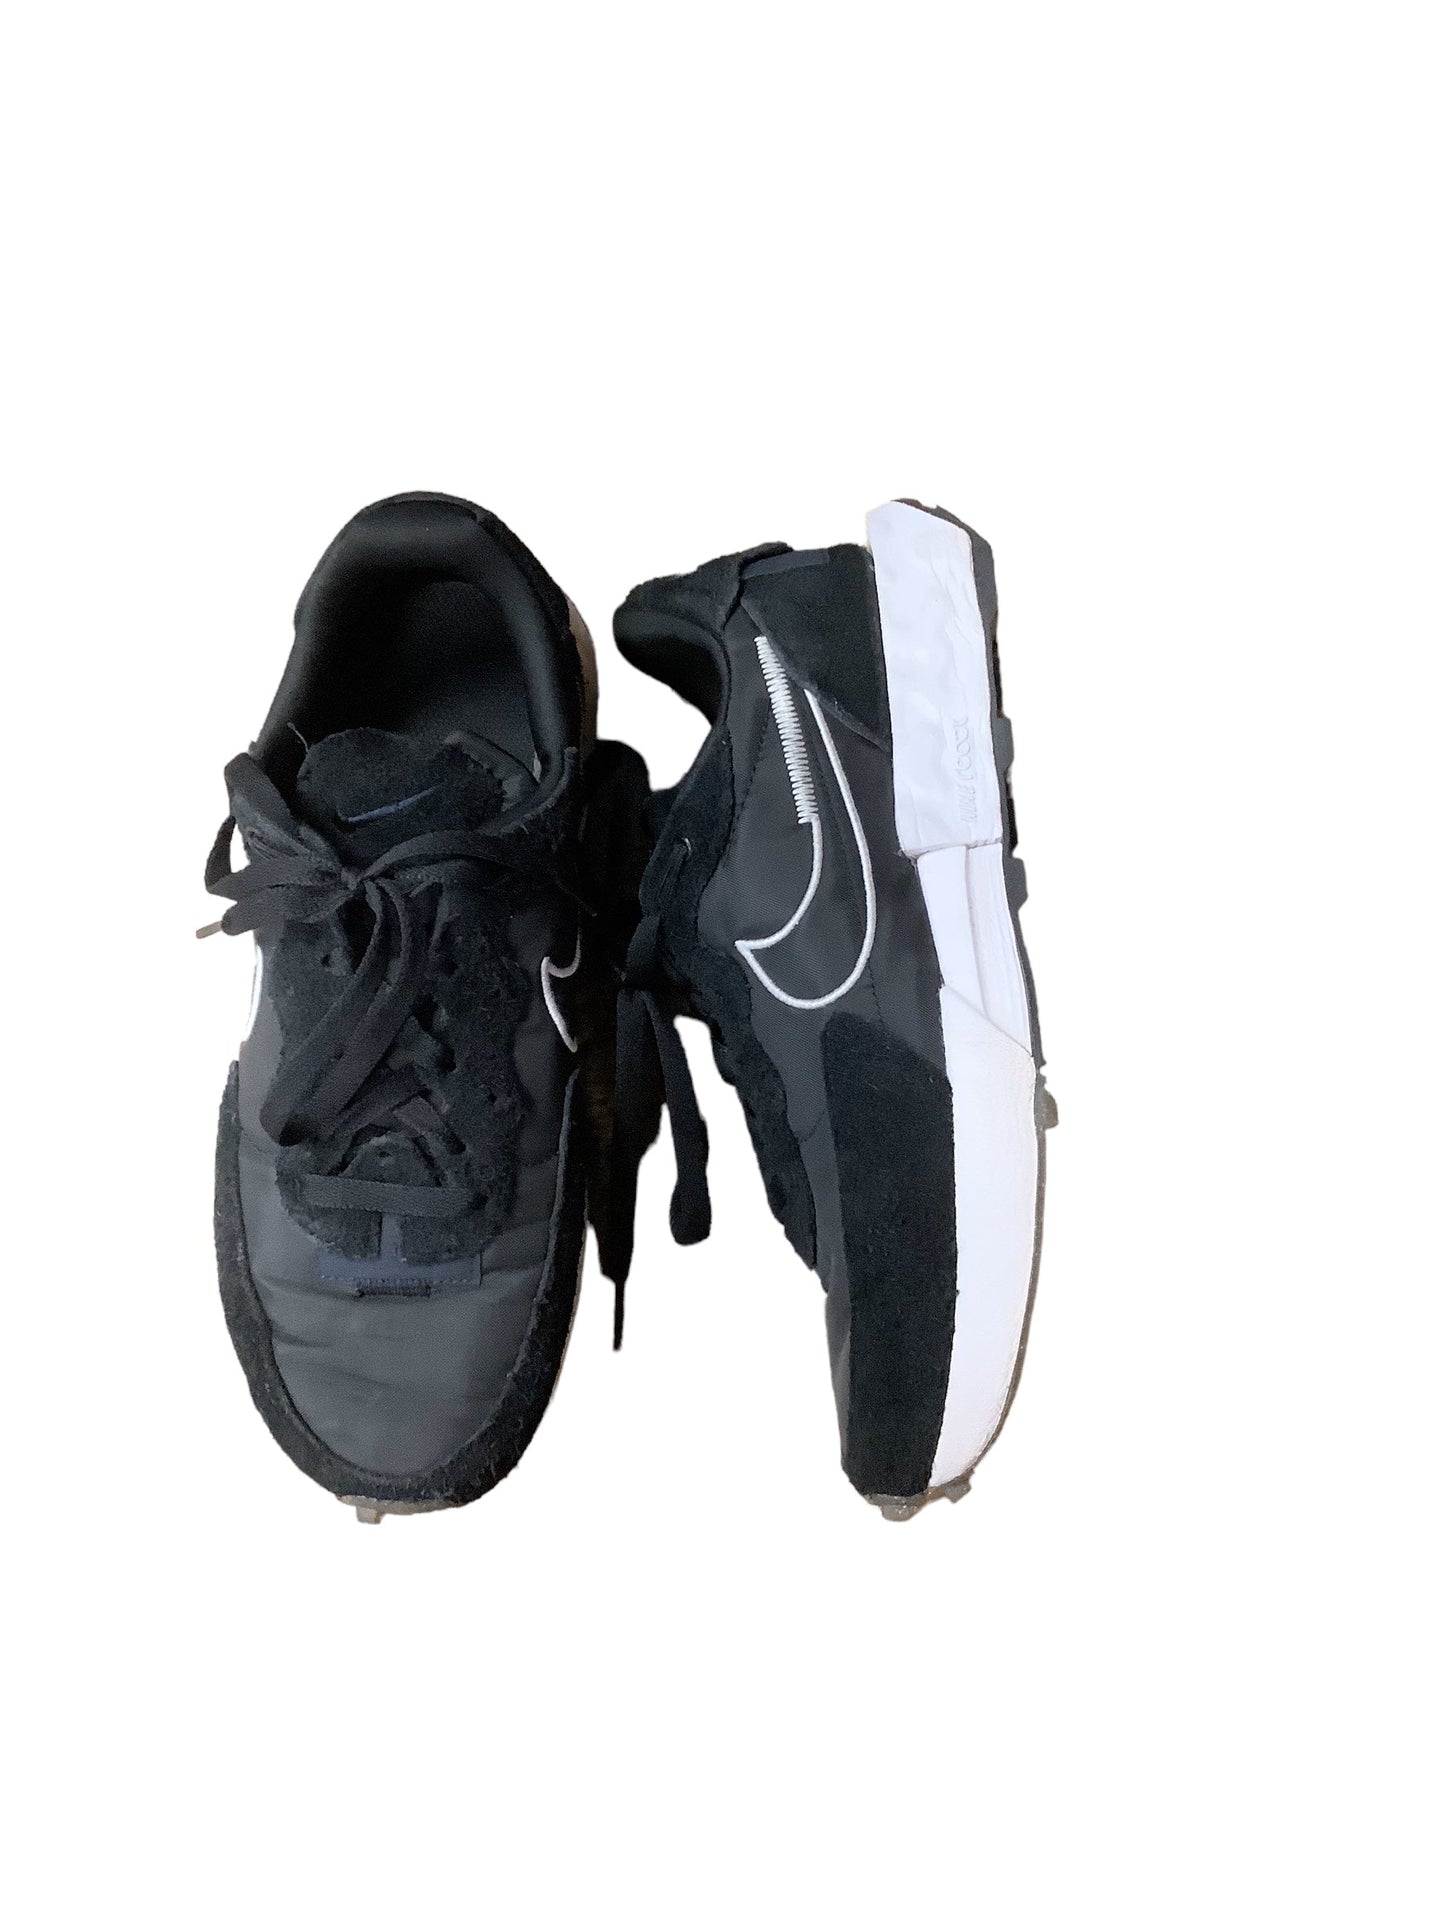 Black & White Shoes Athletic Nike, Size 9.5